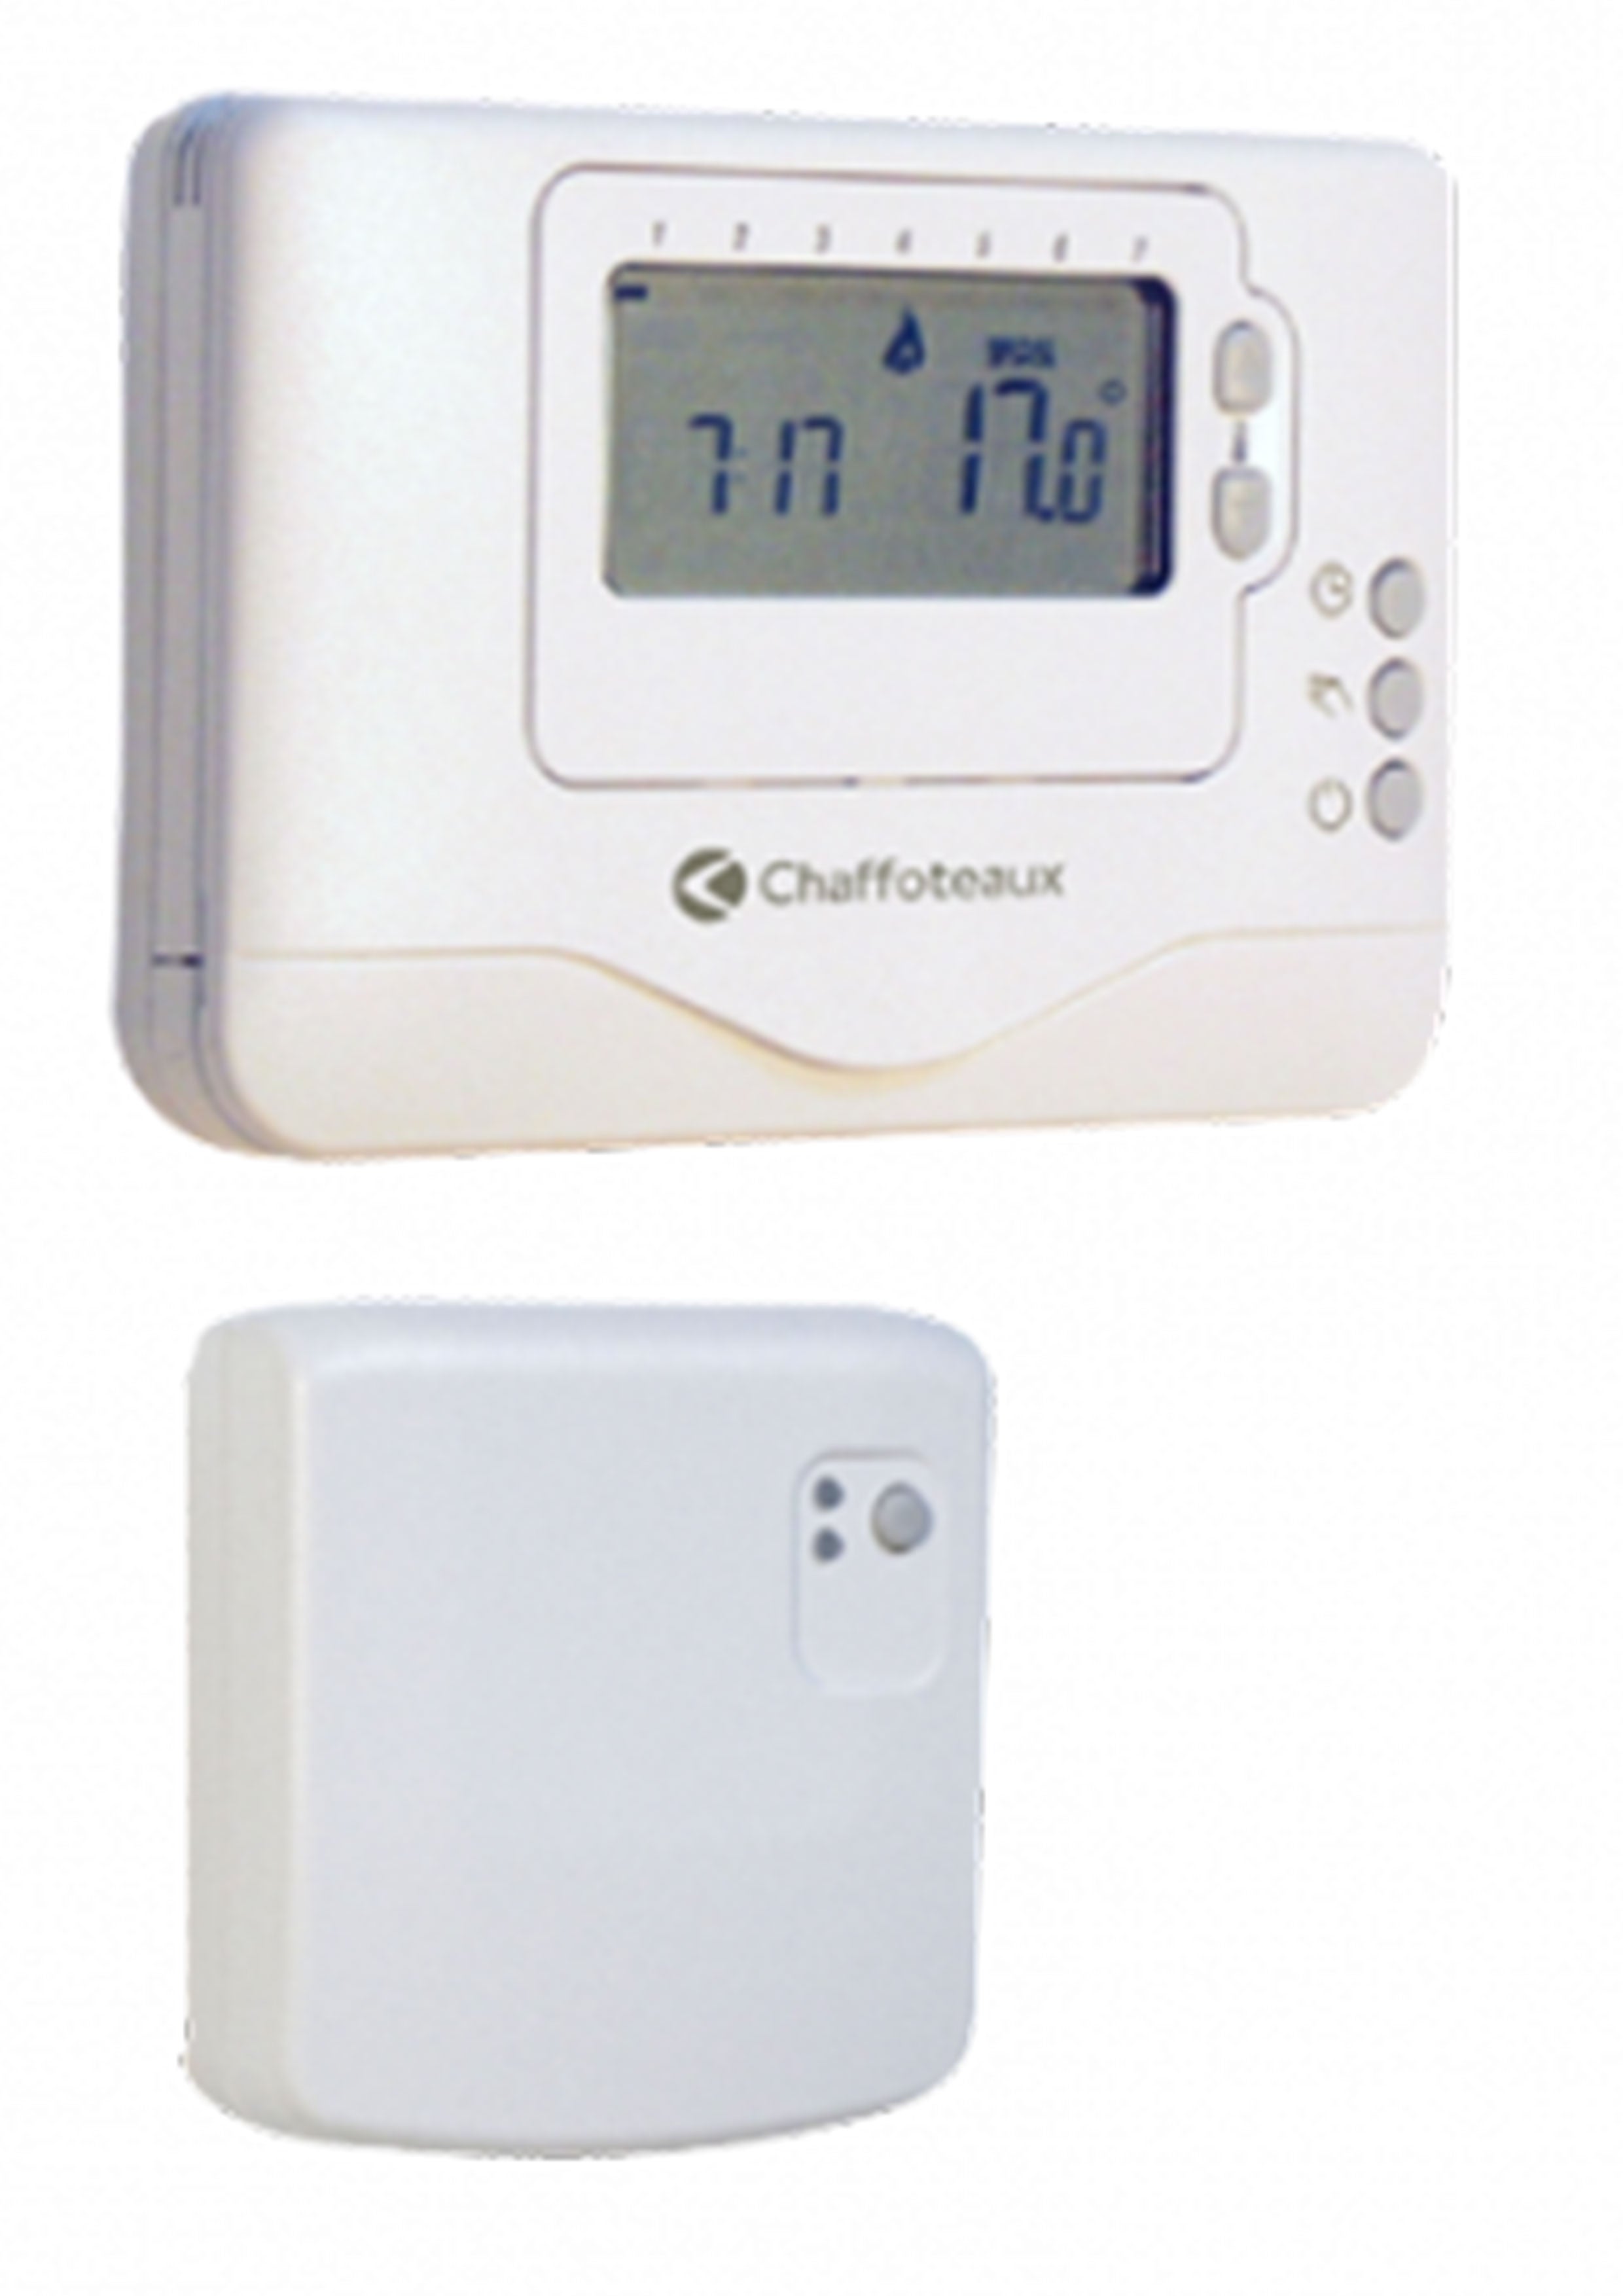 rongweiwang LCD Murale Chaudière gaz Thermostat dambiance programmable numérique hebdomadaire Chauffage Thermostat régulateur de température numérique 